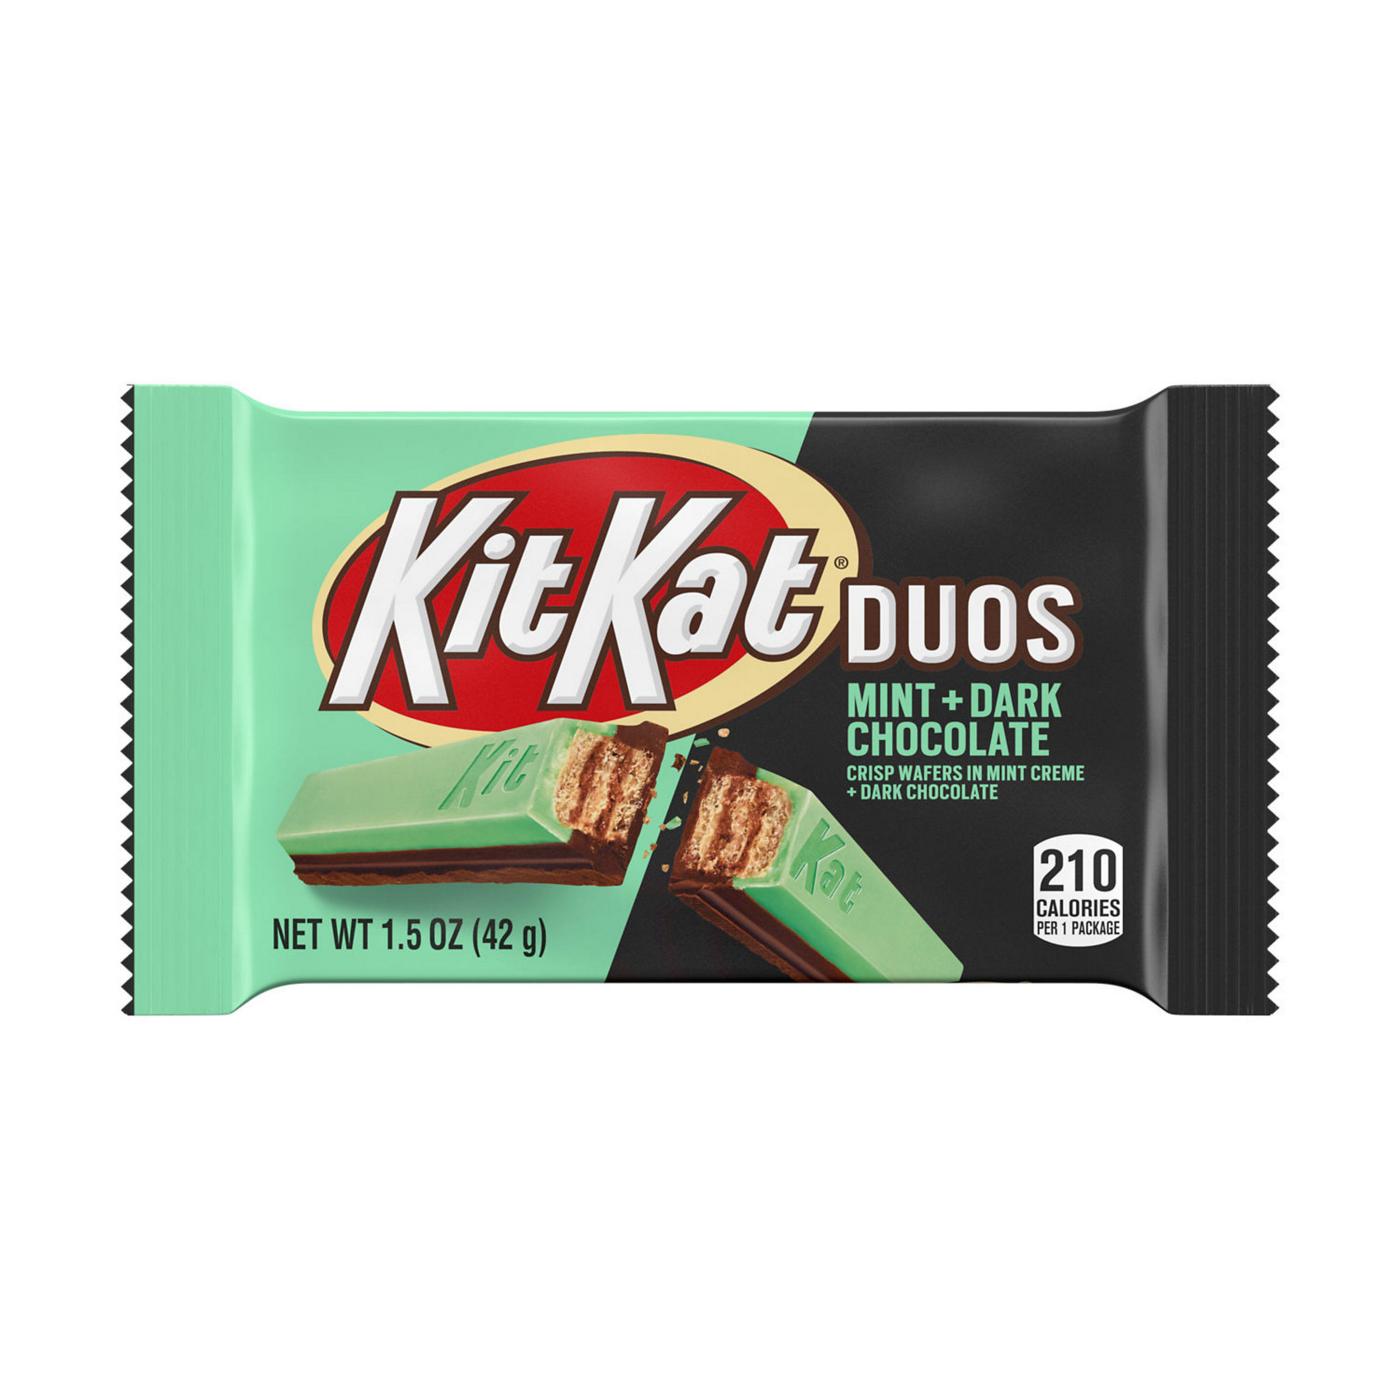 Kit Kat Duos Mint & Dark Chocolate Candy Bar; image 1 of 6